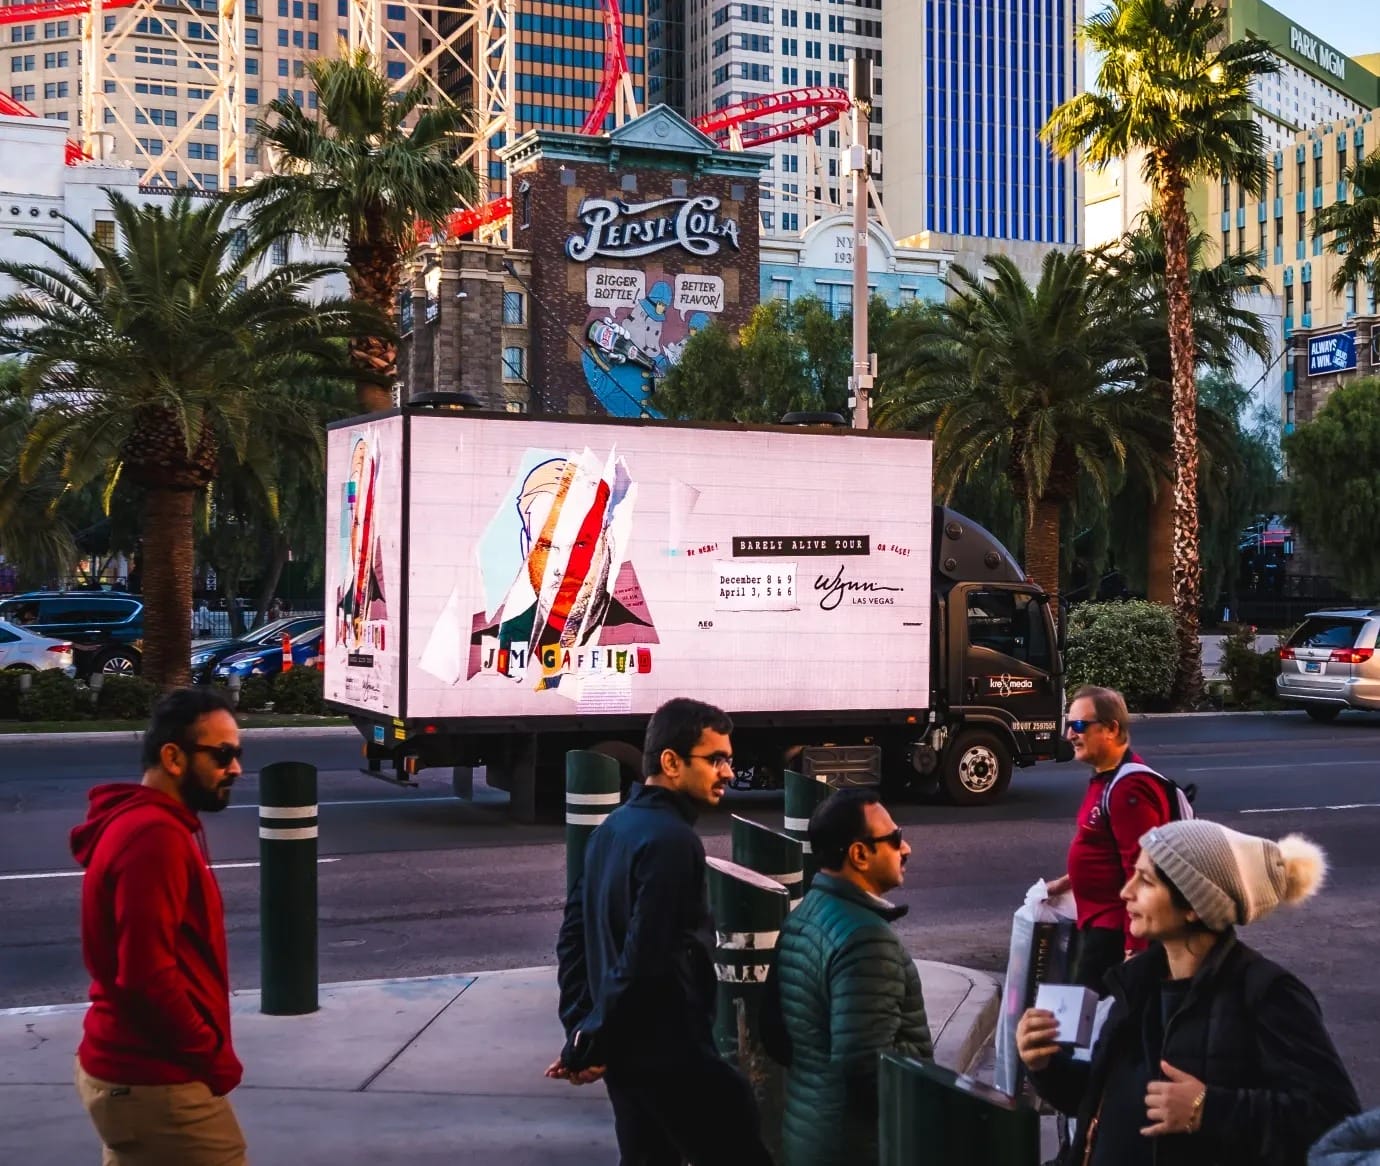 People walking near Las Vegas billboard truck.